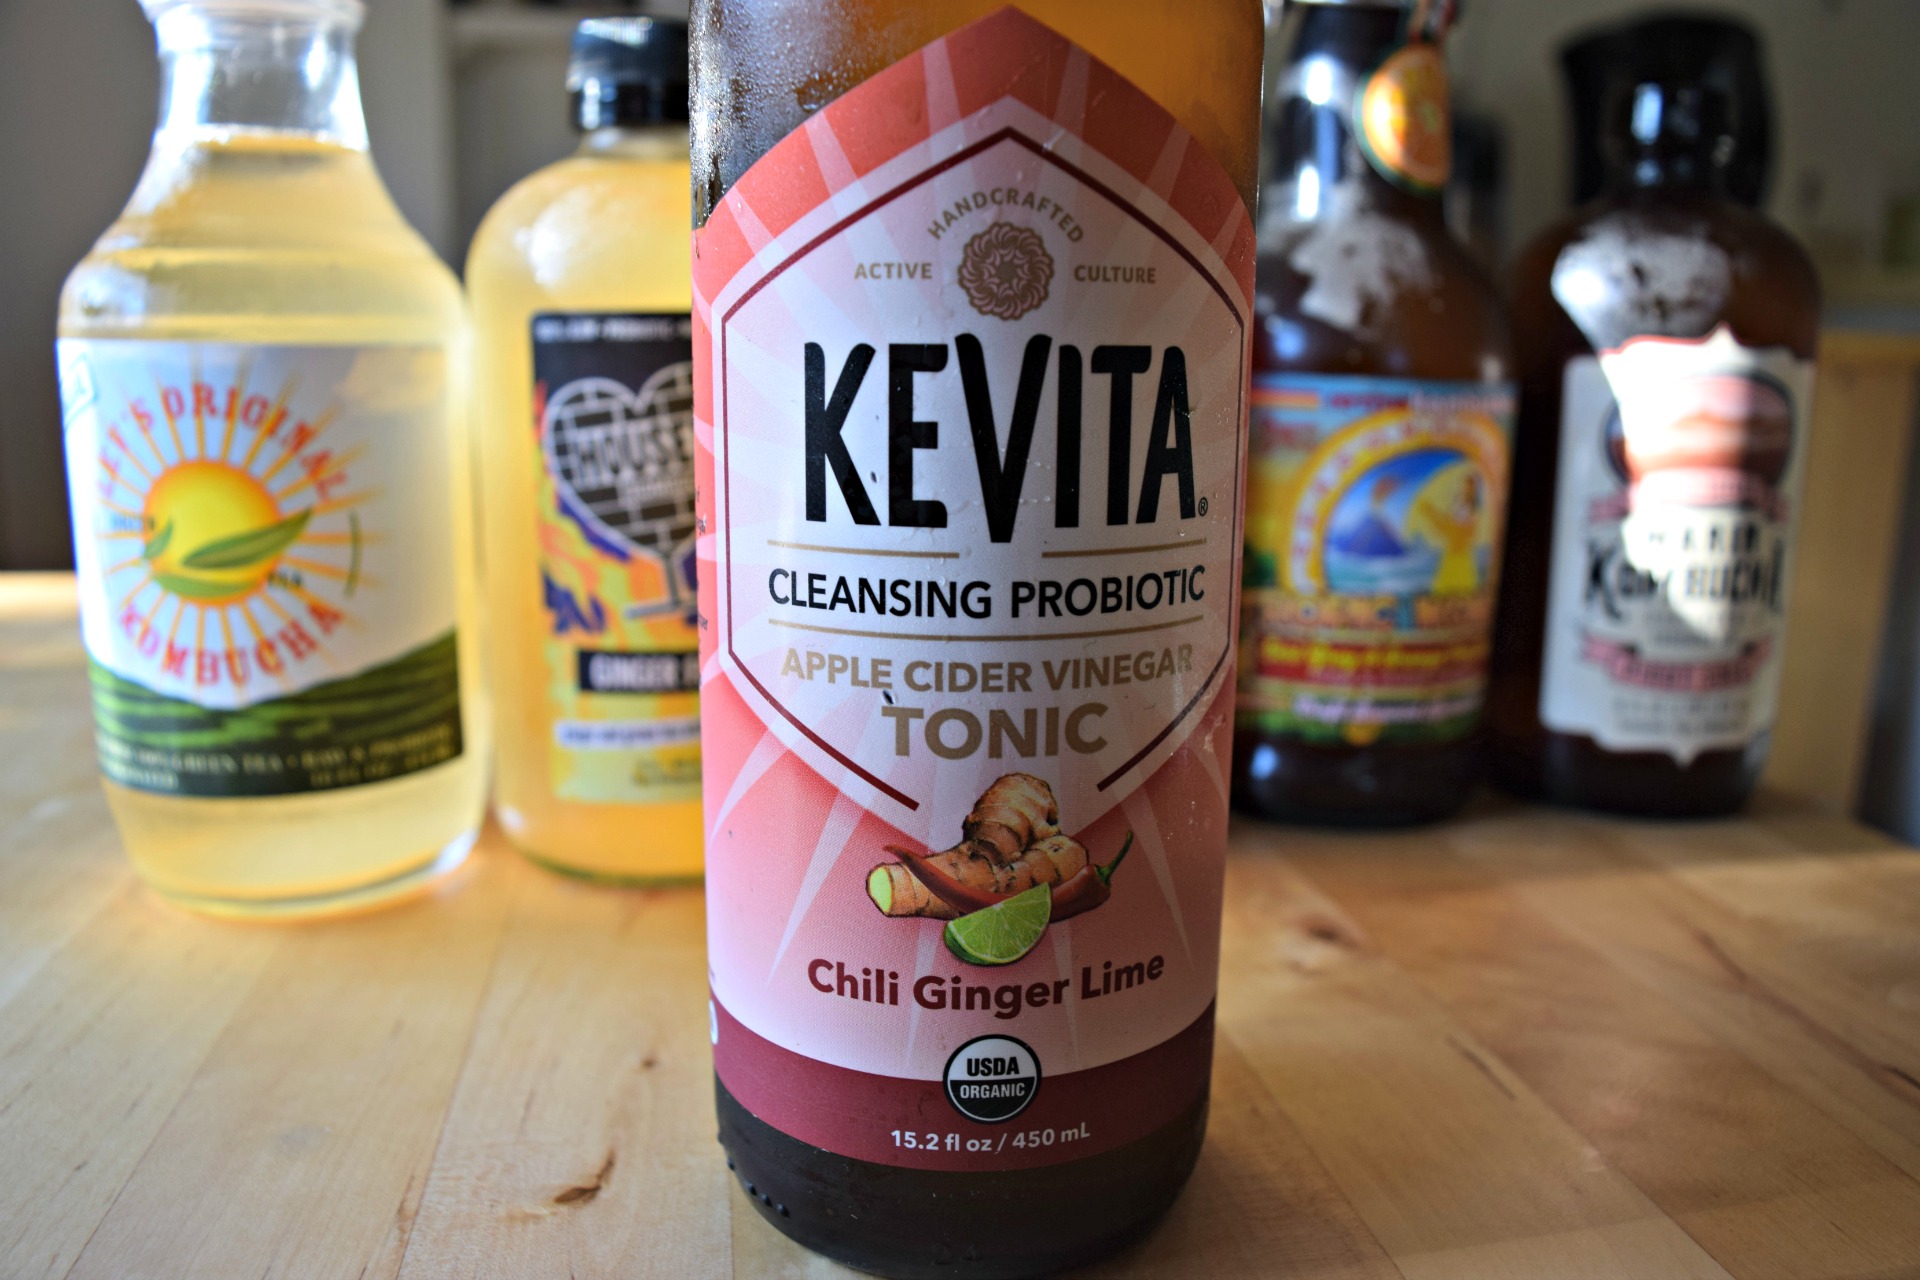 Kevita's Chili Ginger Lime tonic.